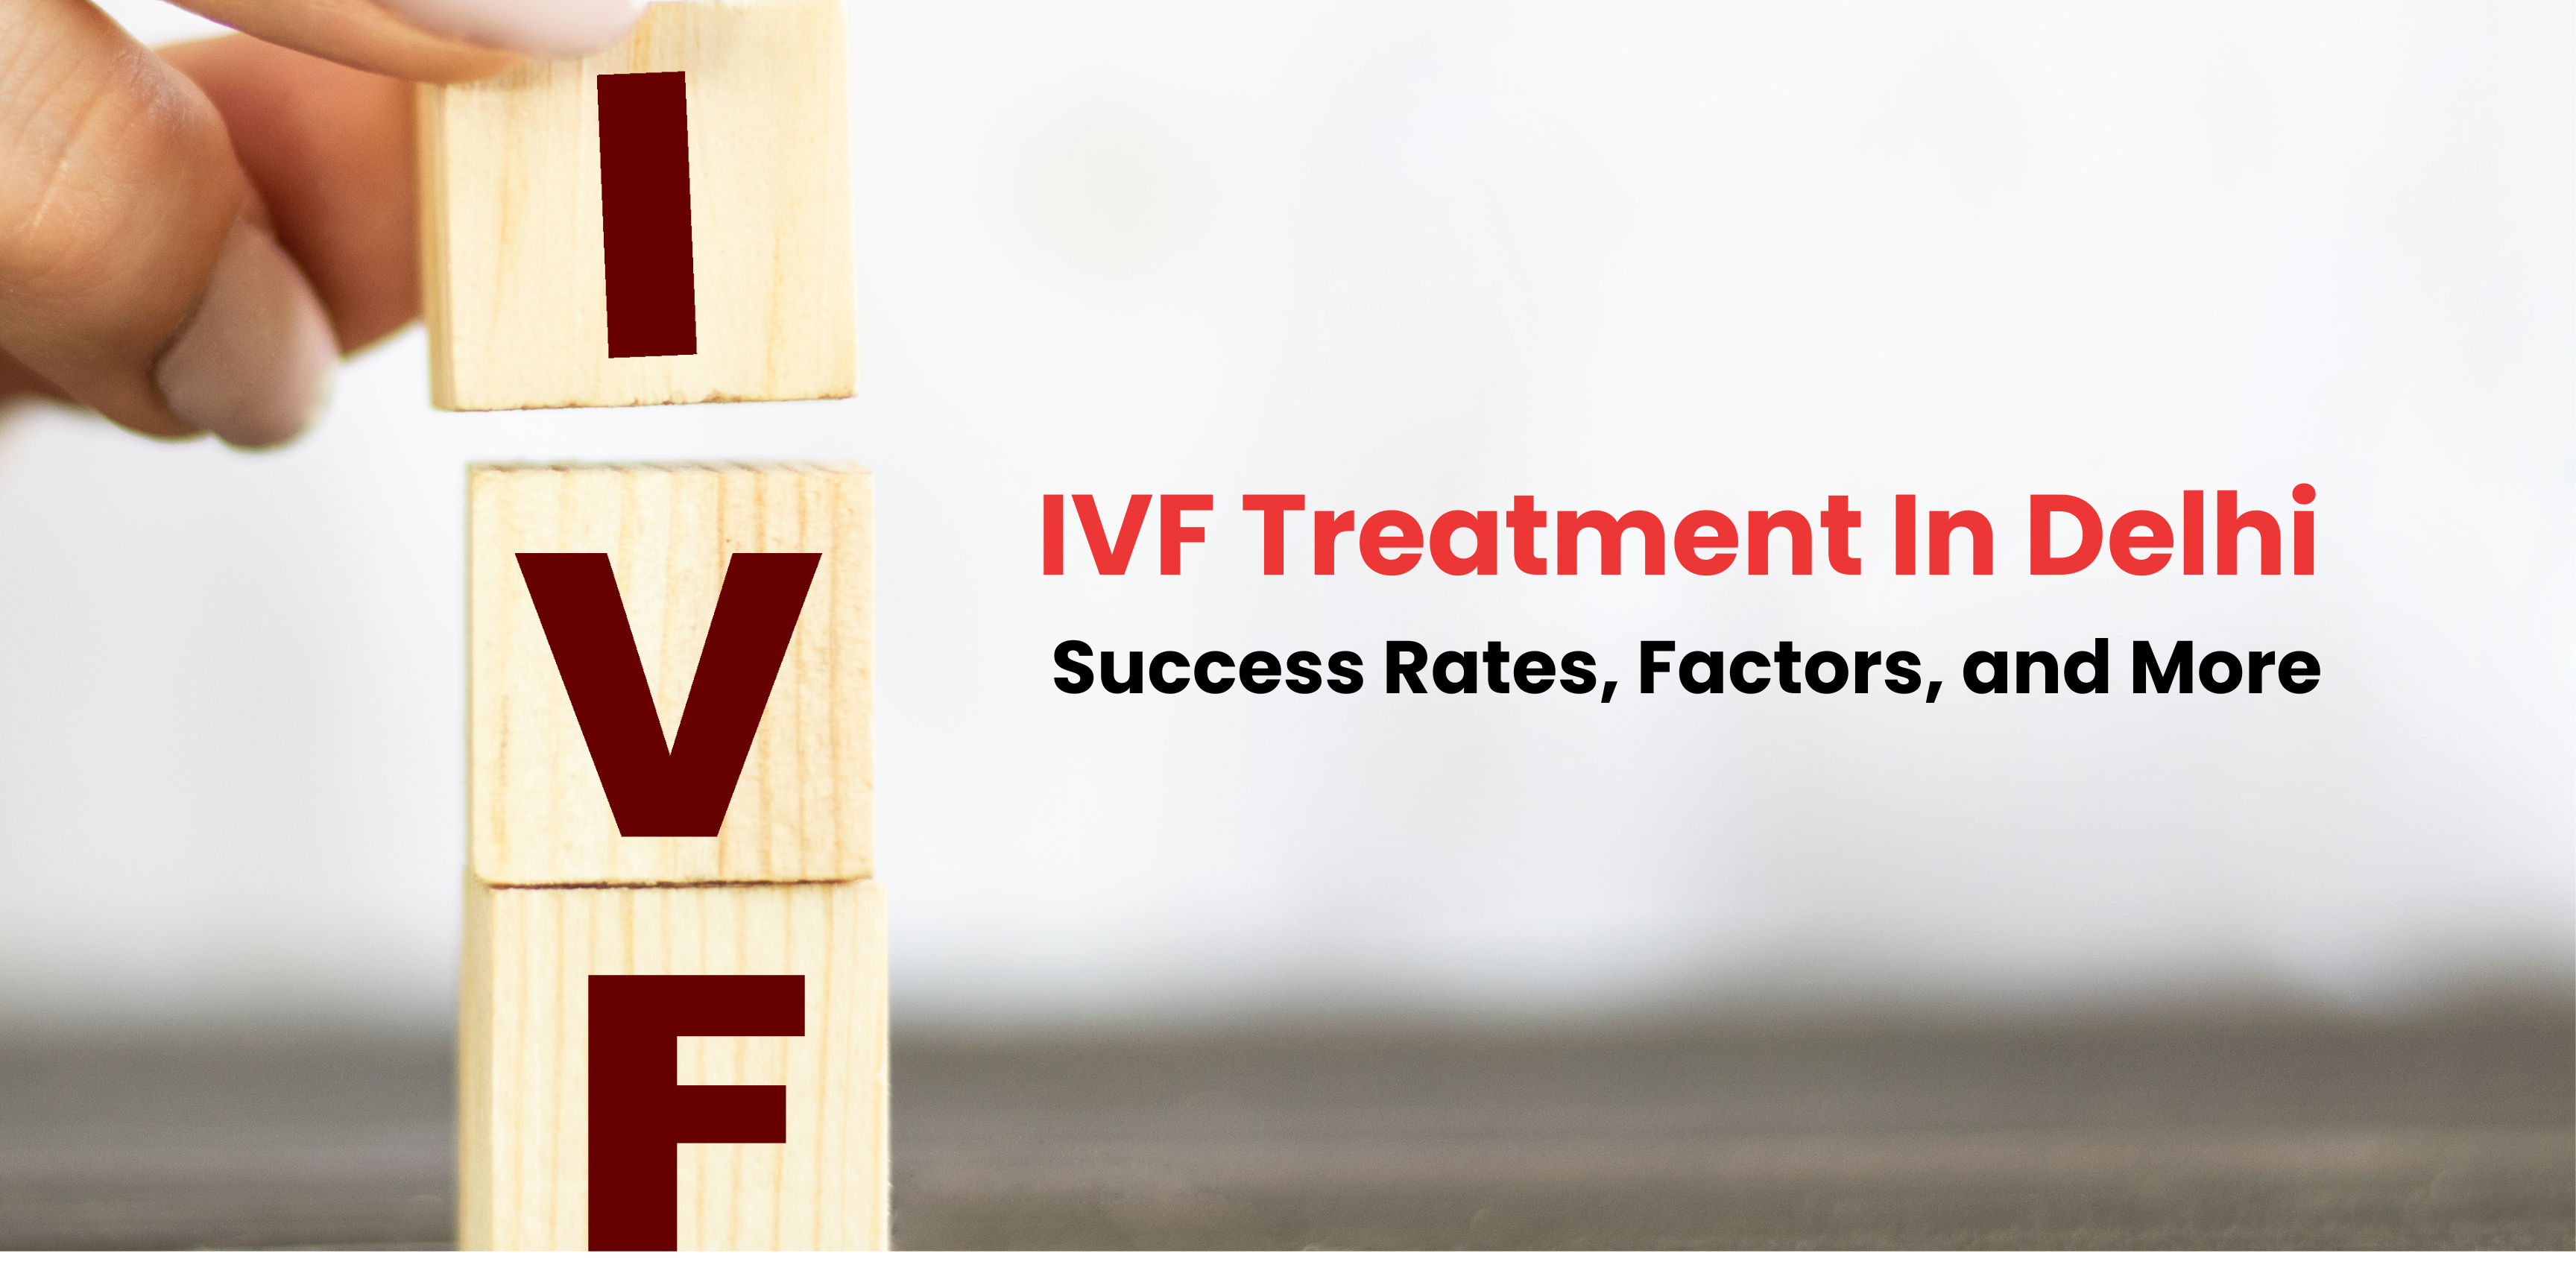 IVF Treatment In Delhi: Success Rates, Factors, and More